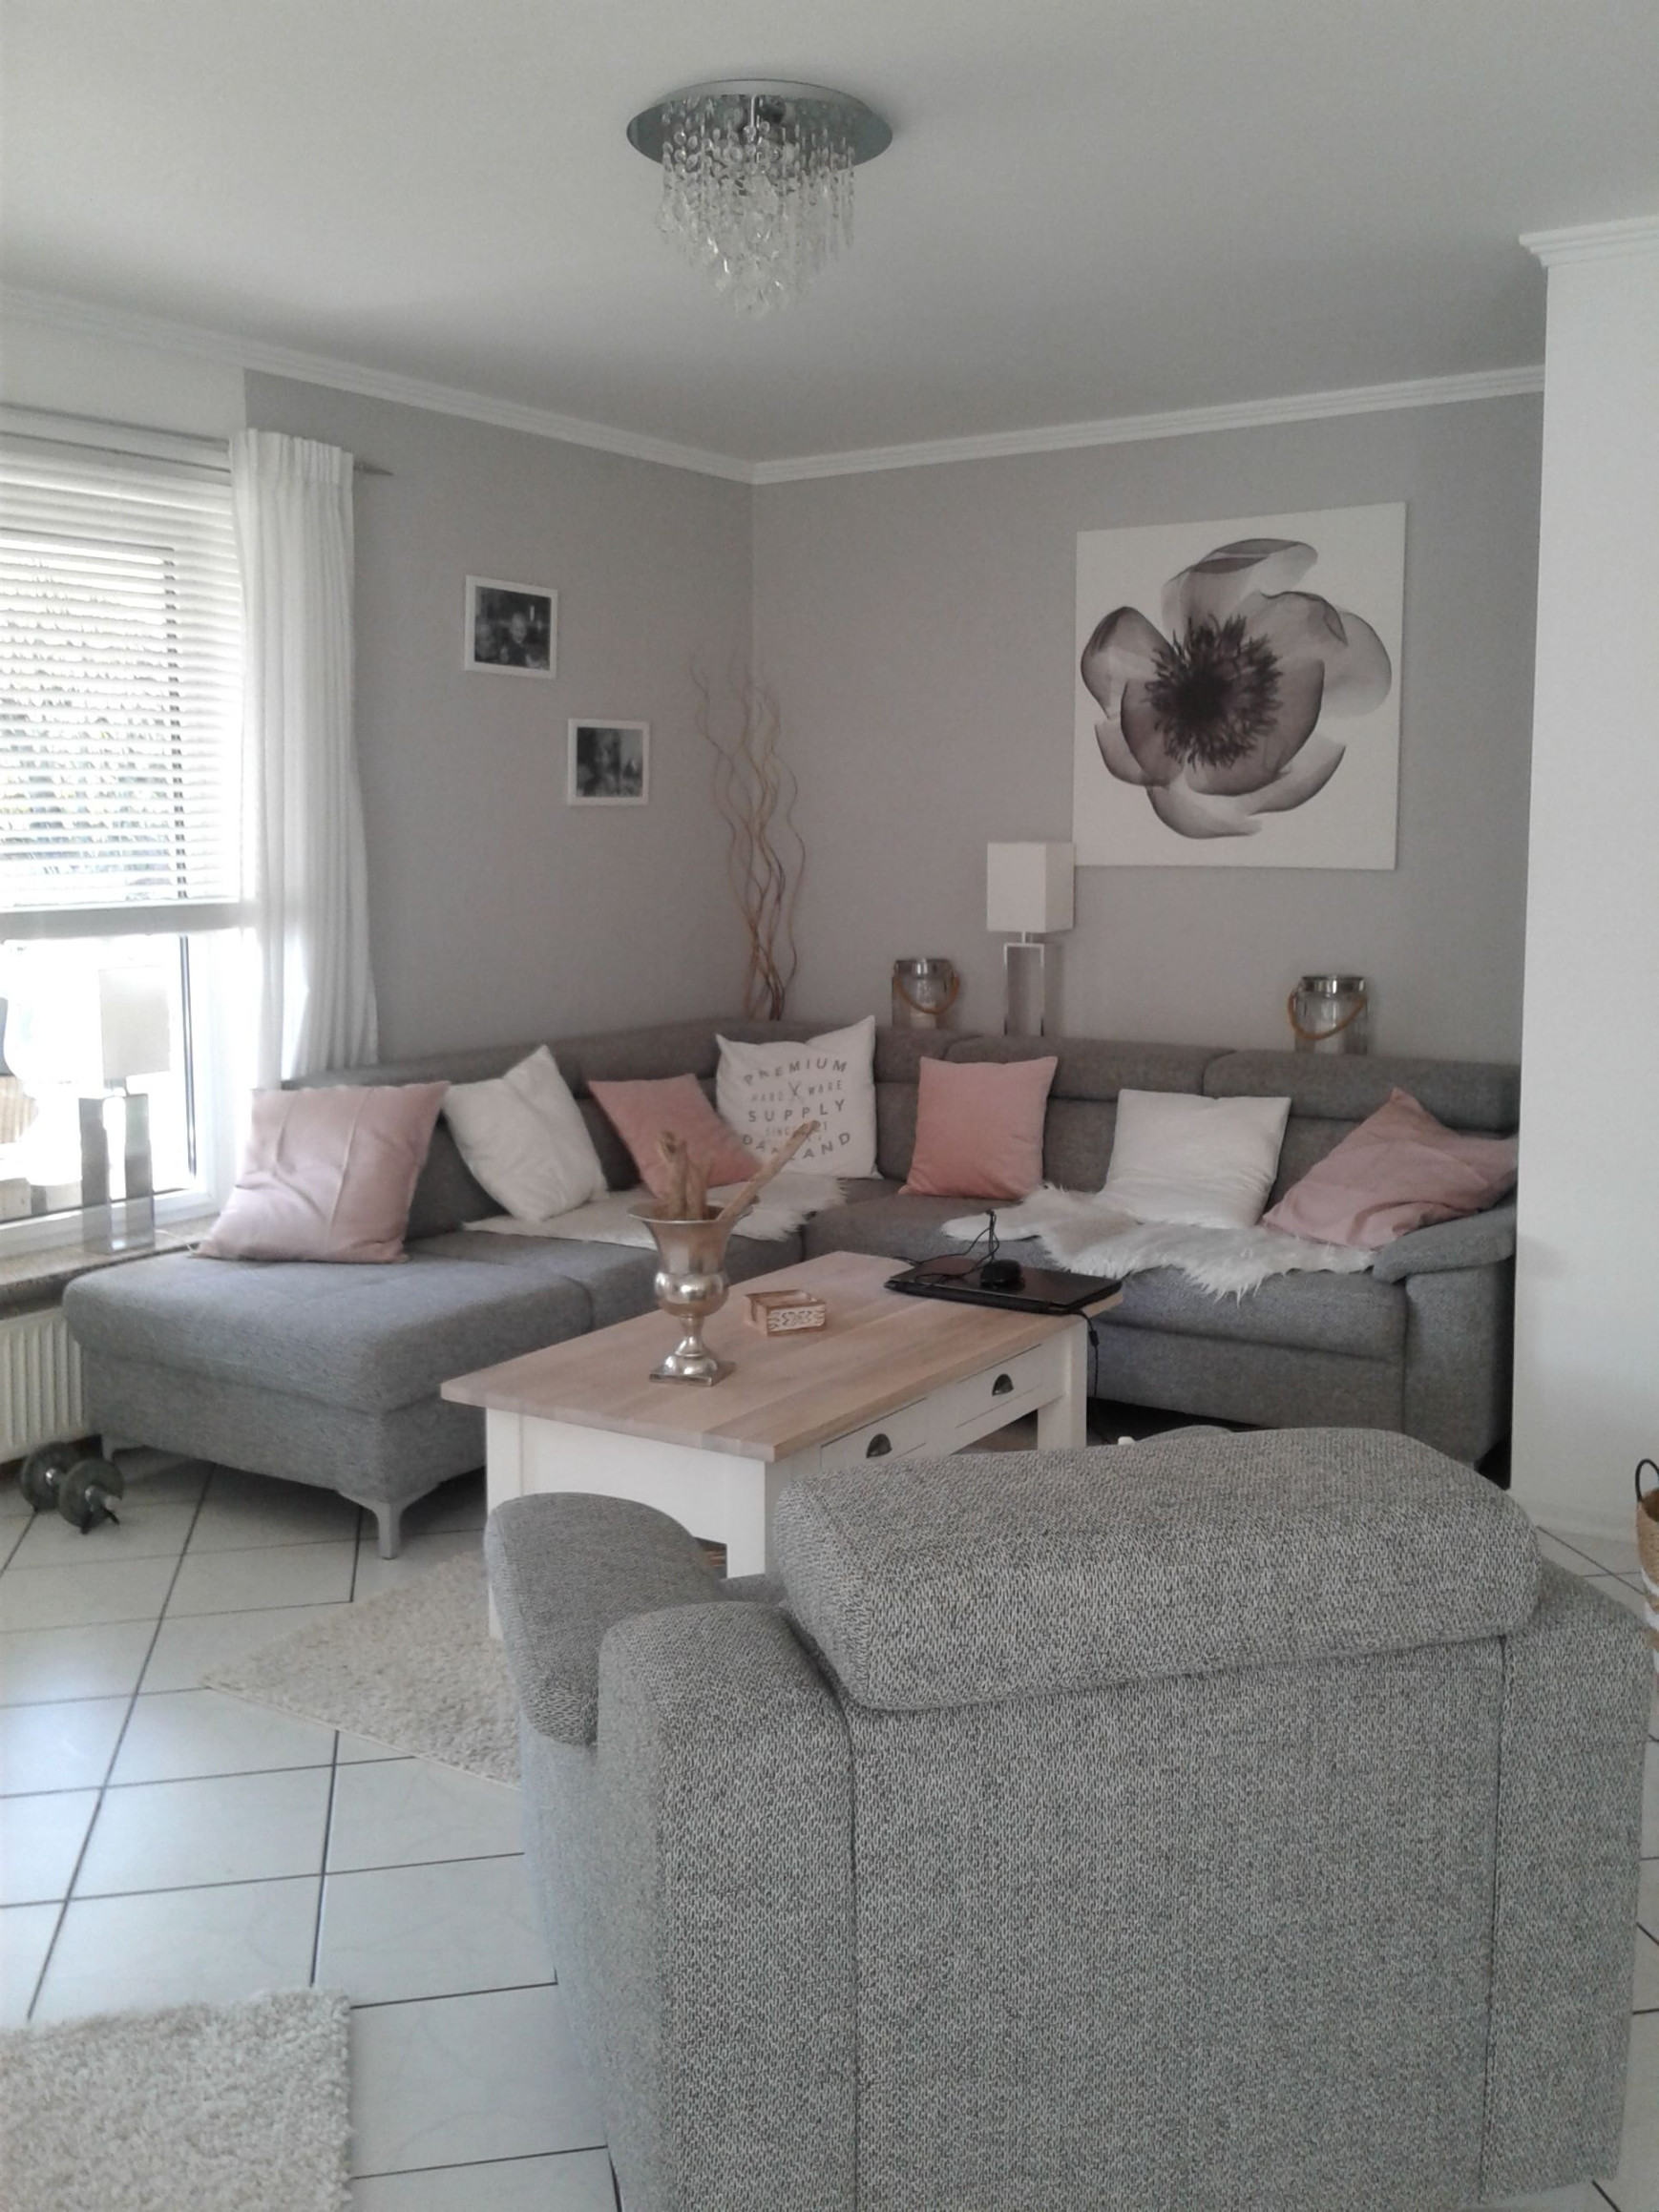 Wohnzimmer in grau- weiß und Farbtupfer in matt rosa  Wohnzimmer